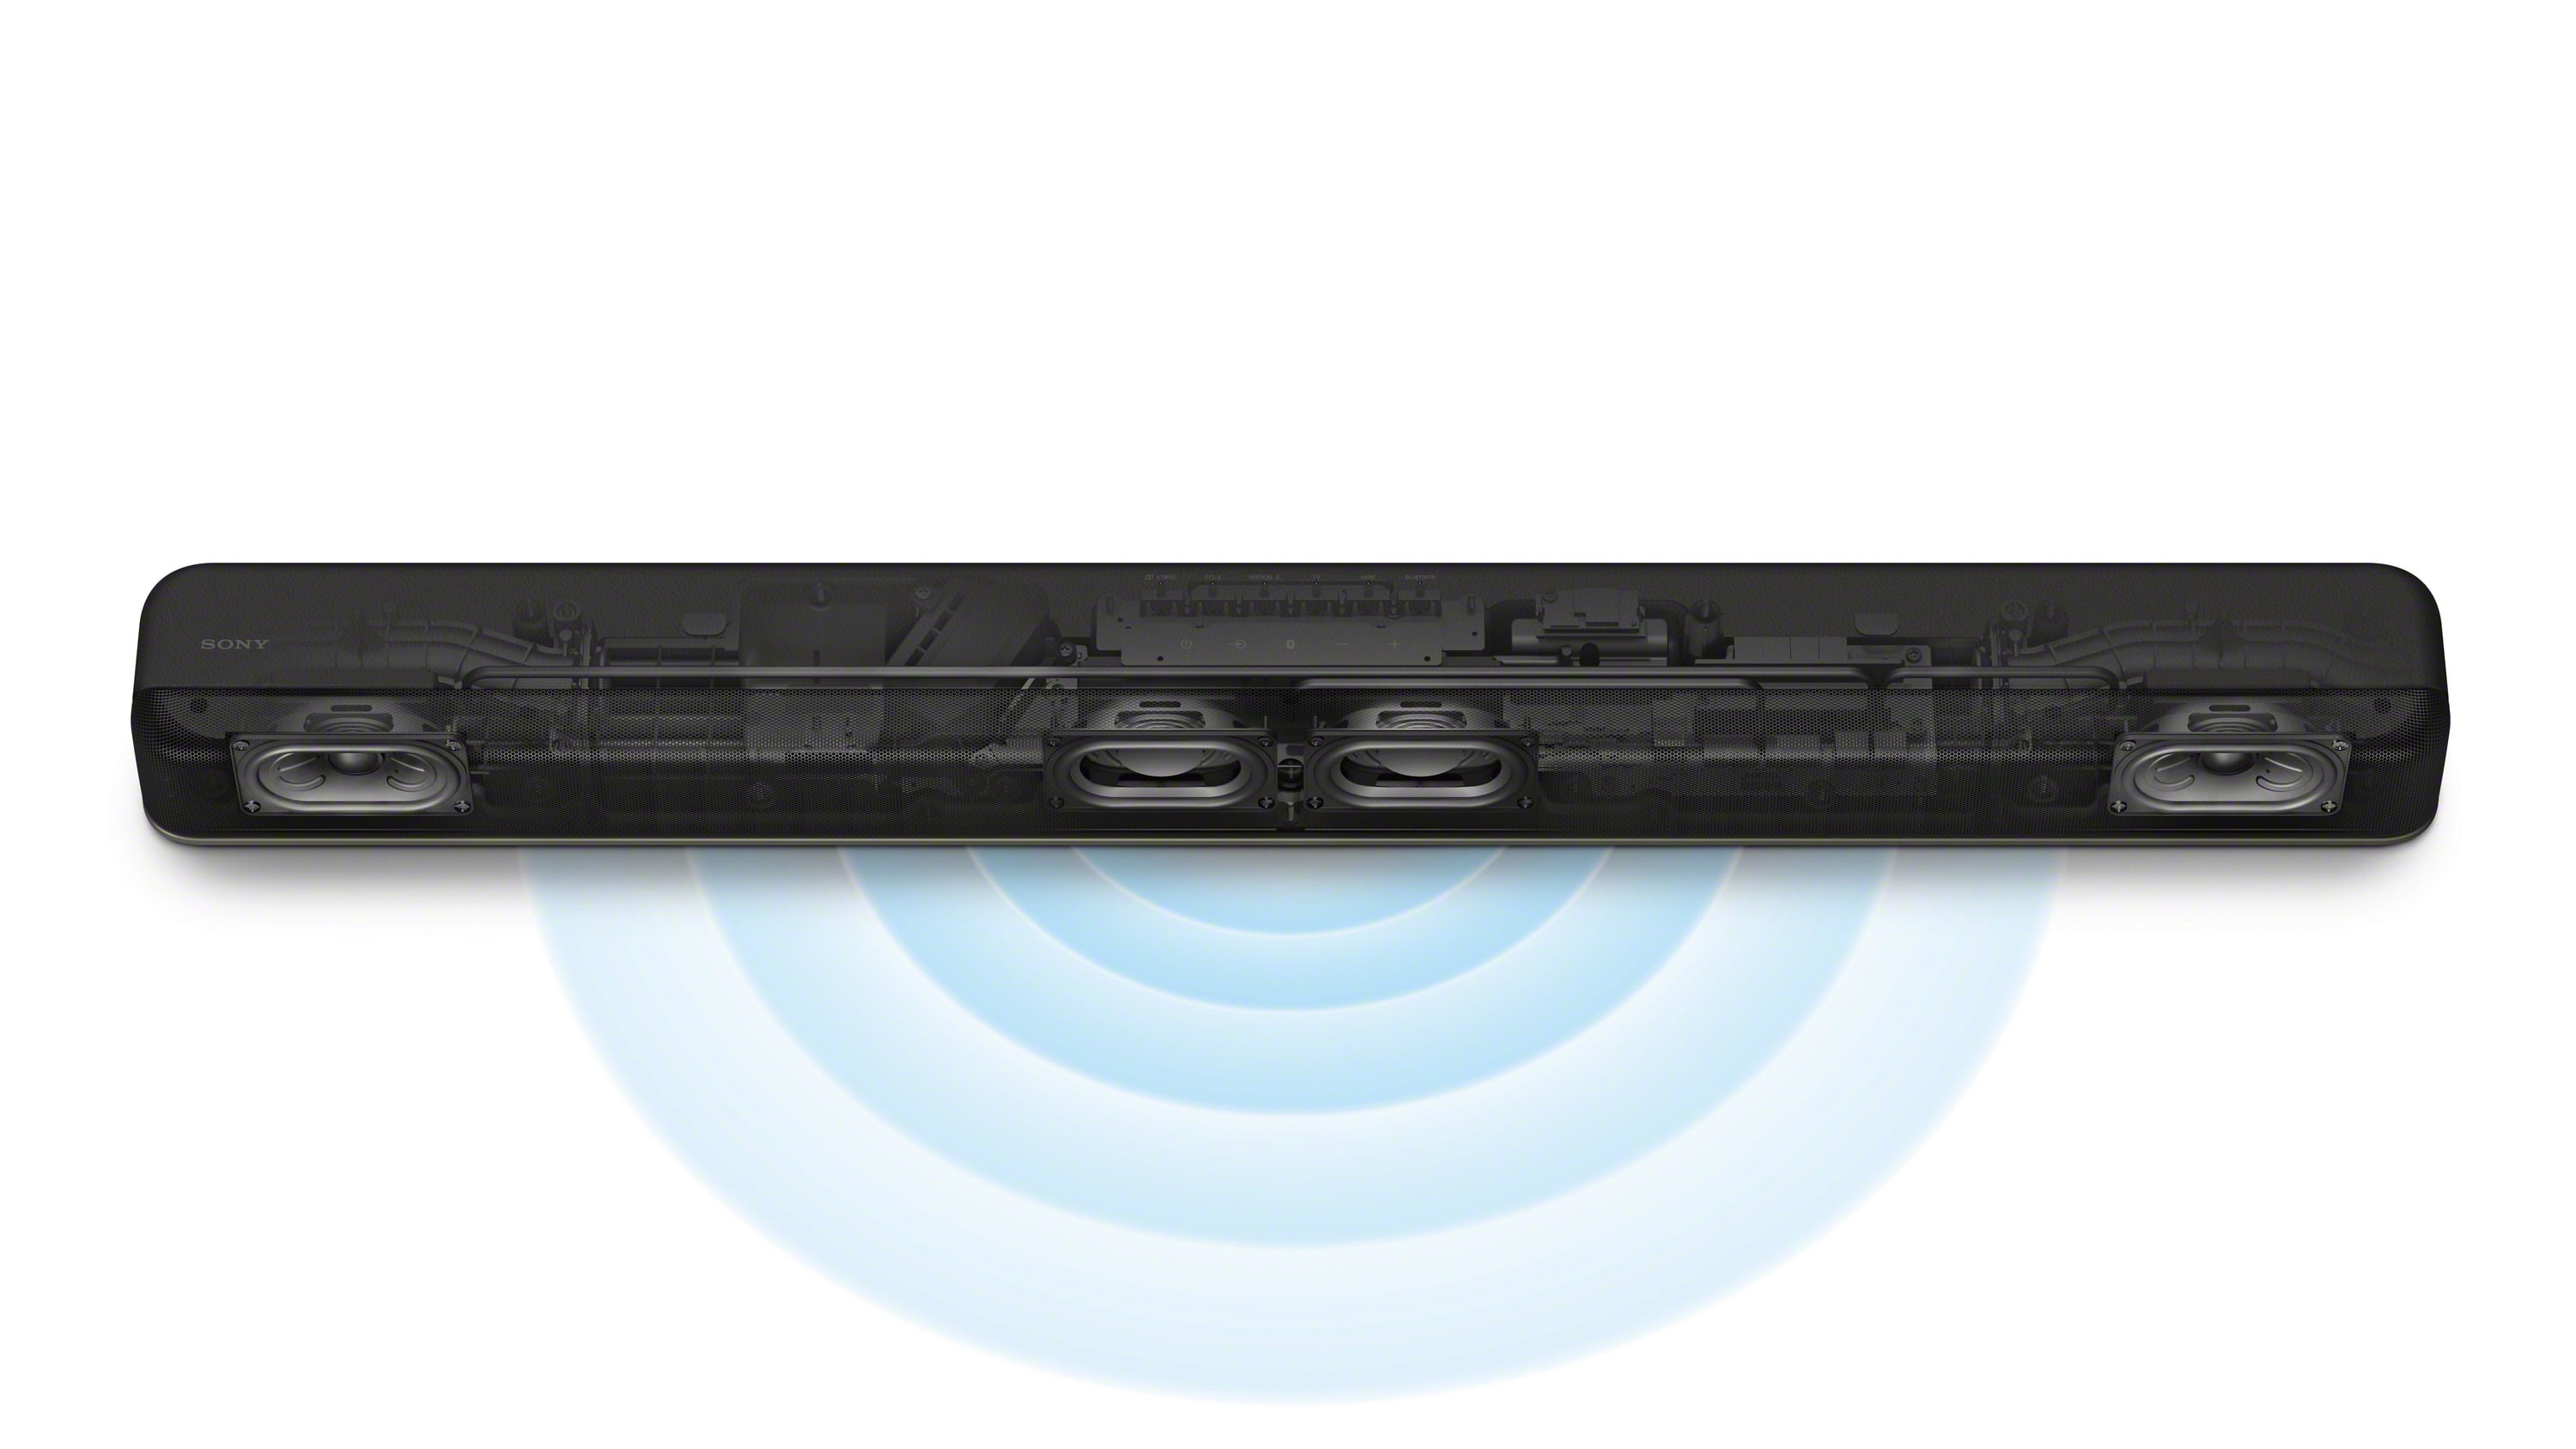 オーディオ機器 スピーカー Sony HT-X8500 2.1ch Dolby Atmos®/DTS:X® Soundbar with Built-in 